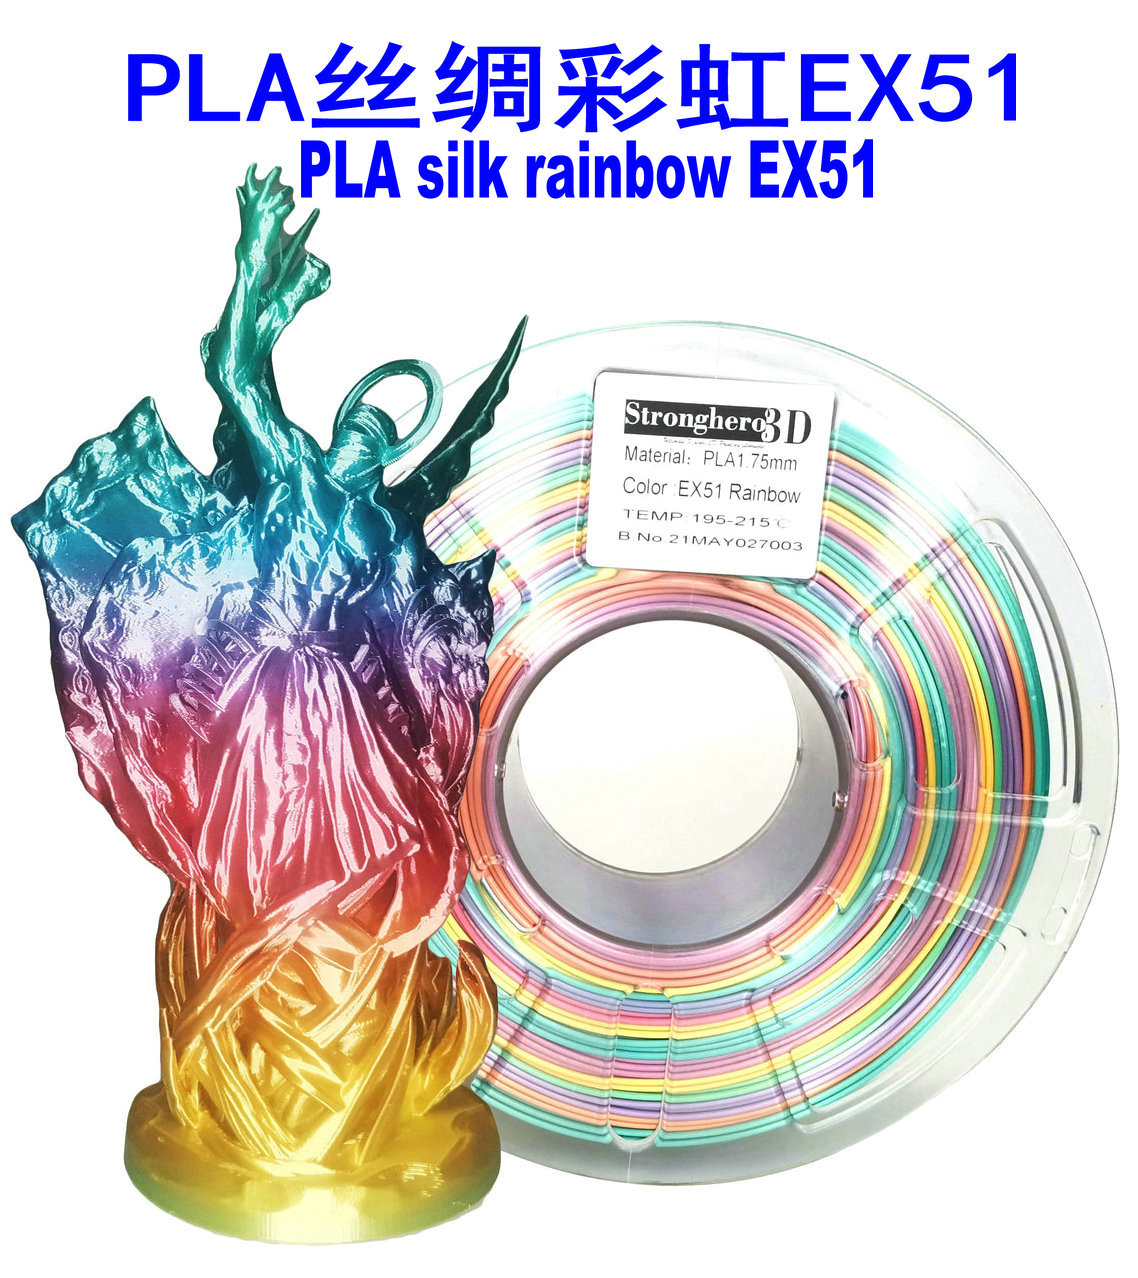 众景 3D打印耗材 PLA耗材 PLA1.75mm 丝绸彩虹色EX51 净重1kg